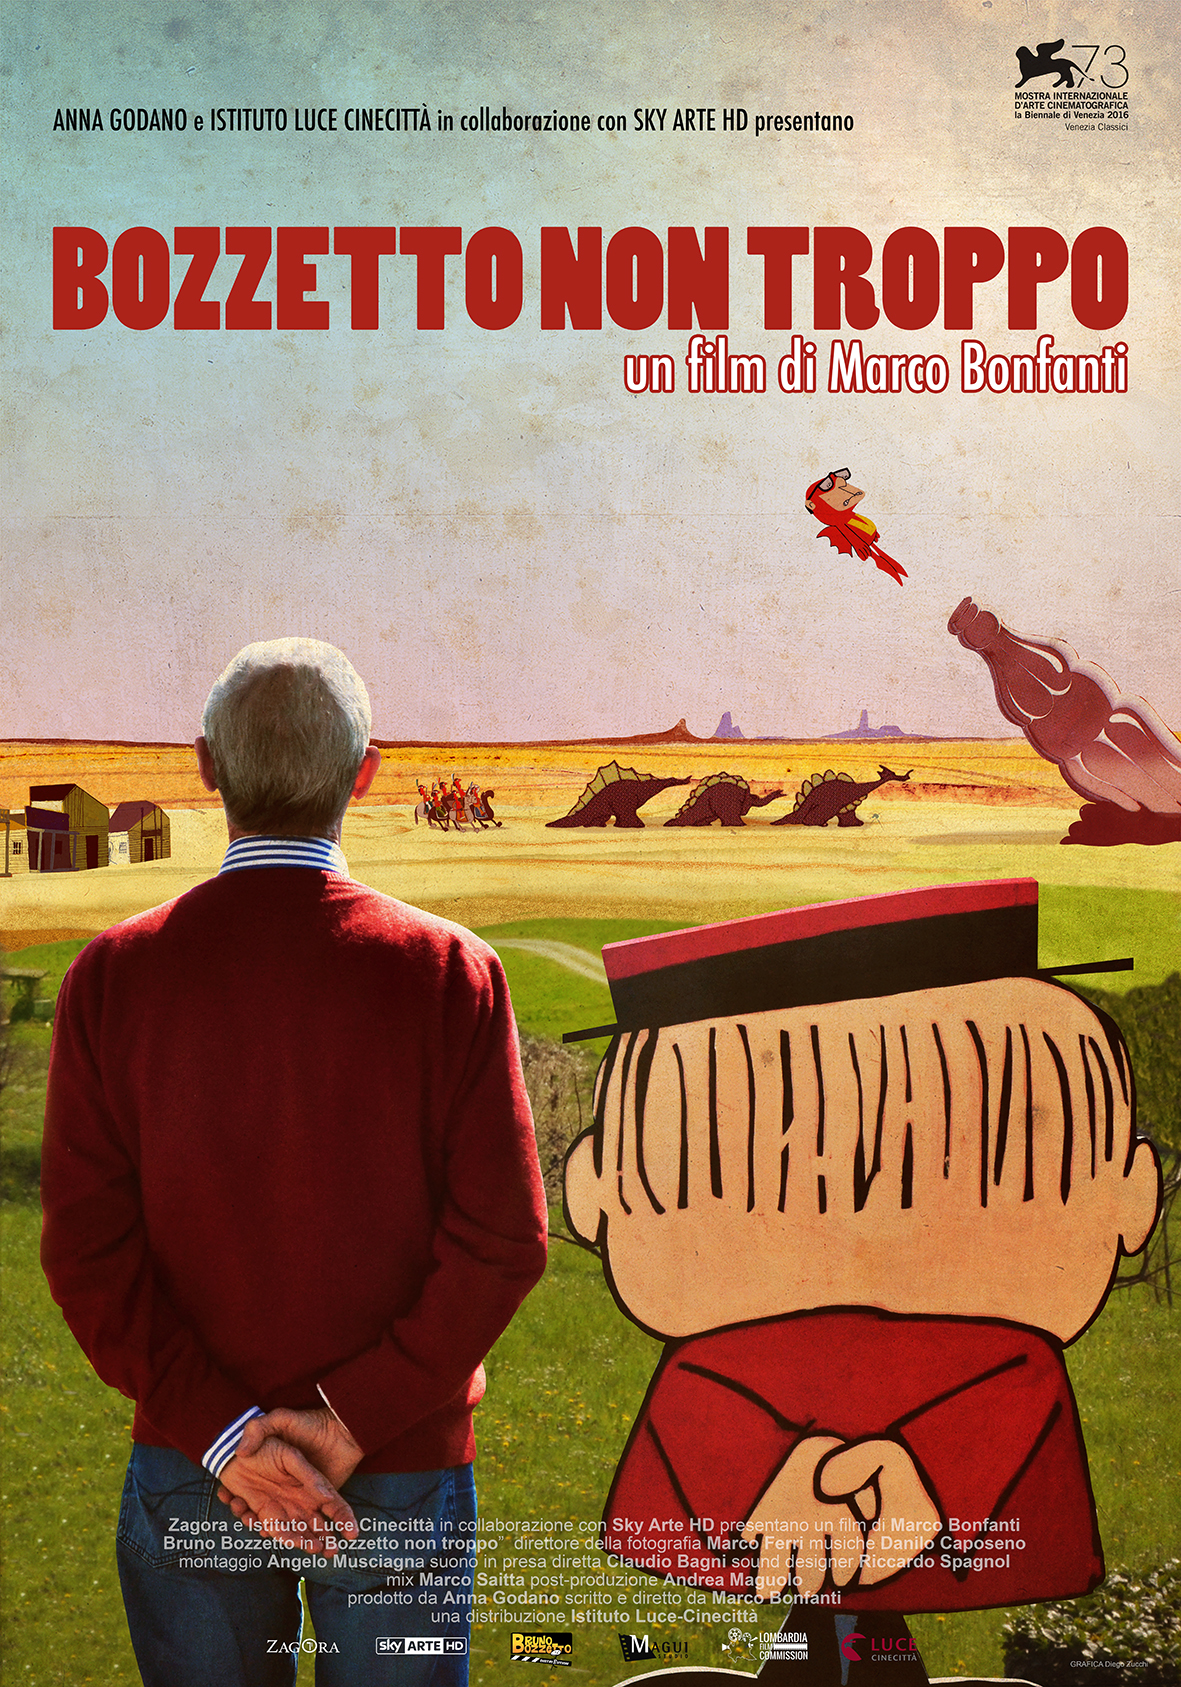 Bozzetto non troppo (2016) with English Subtitles on DVD on DVD